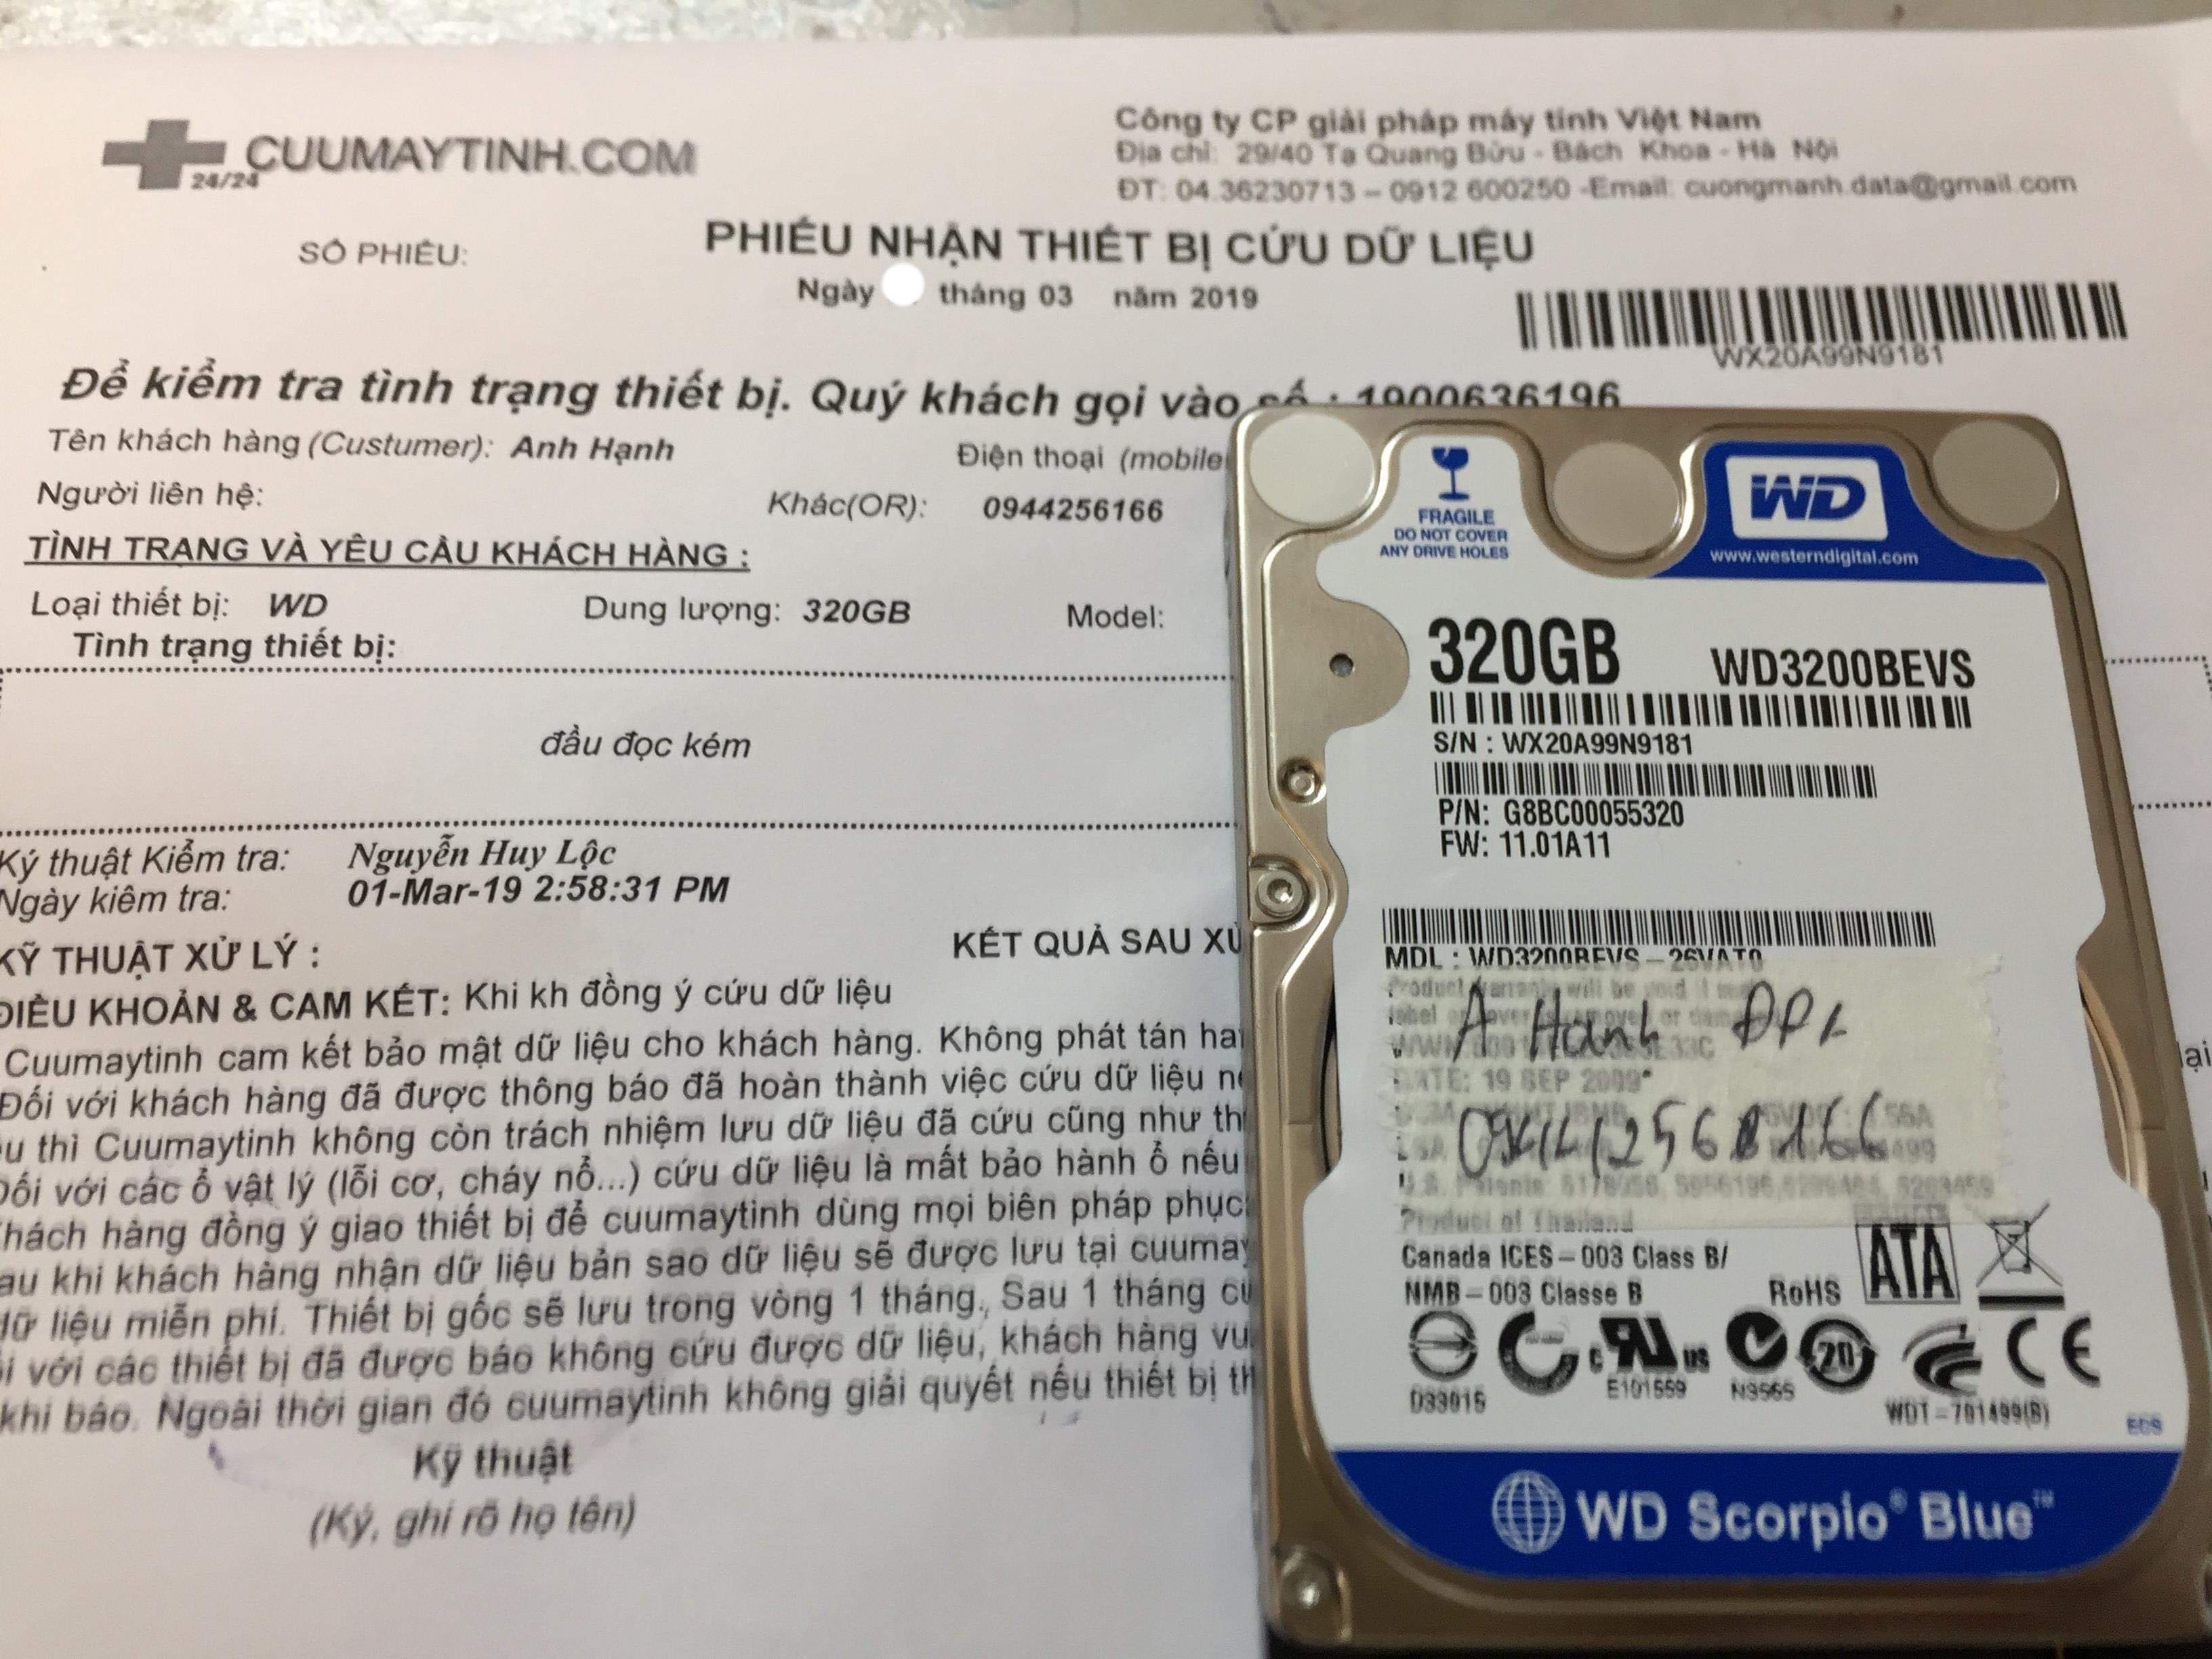 Cứu dữ liệu ổ cứng Western 320GB đầu đọc kém 02/03/2019 - cuumaytinh